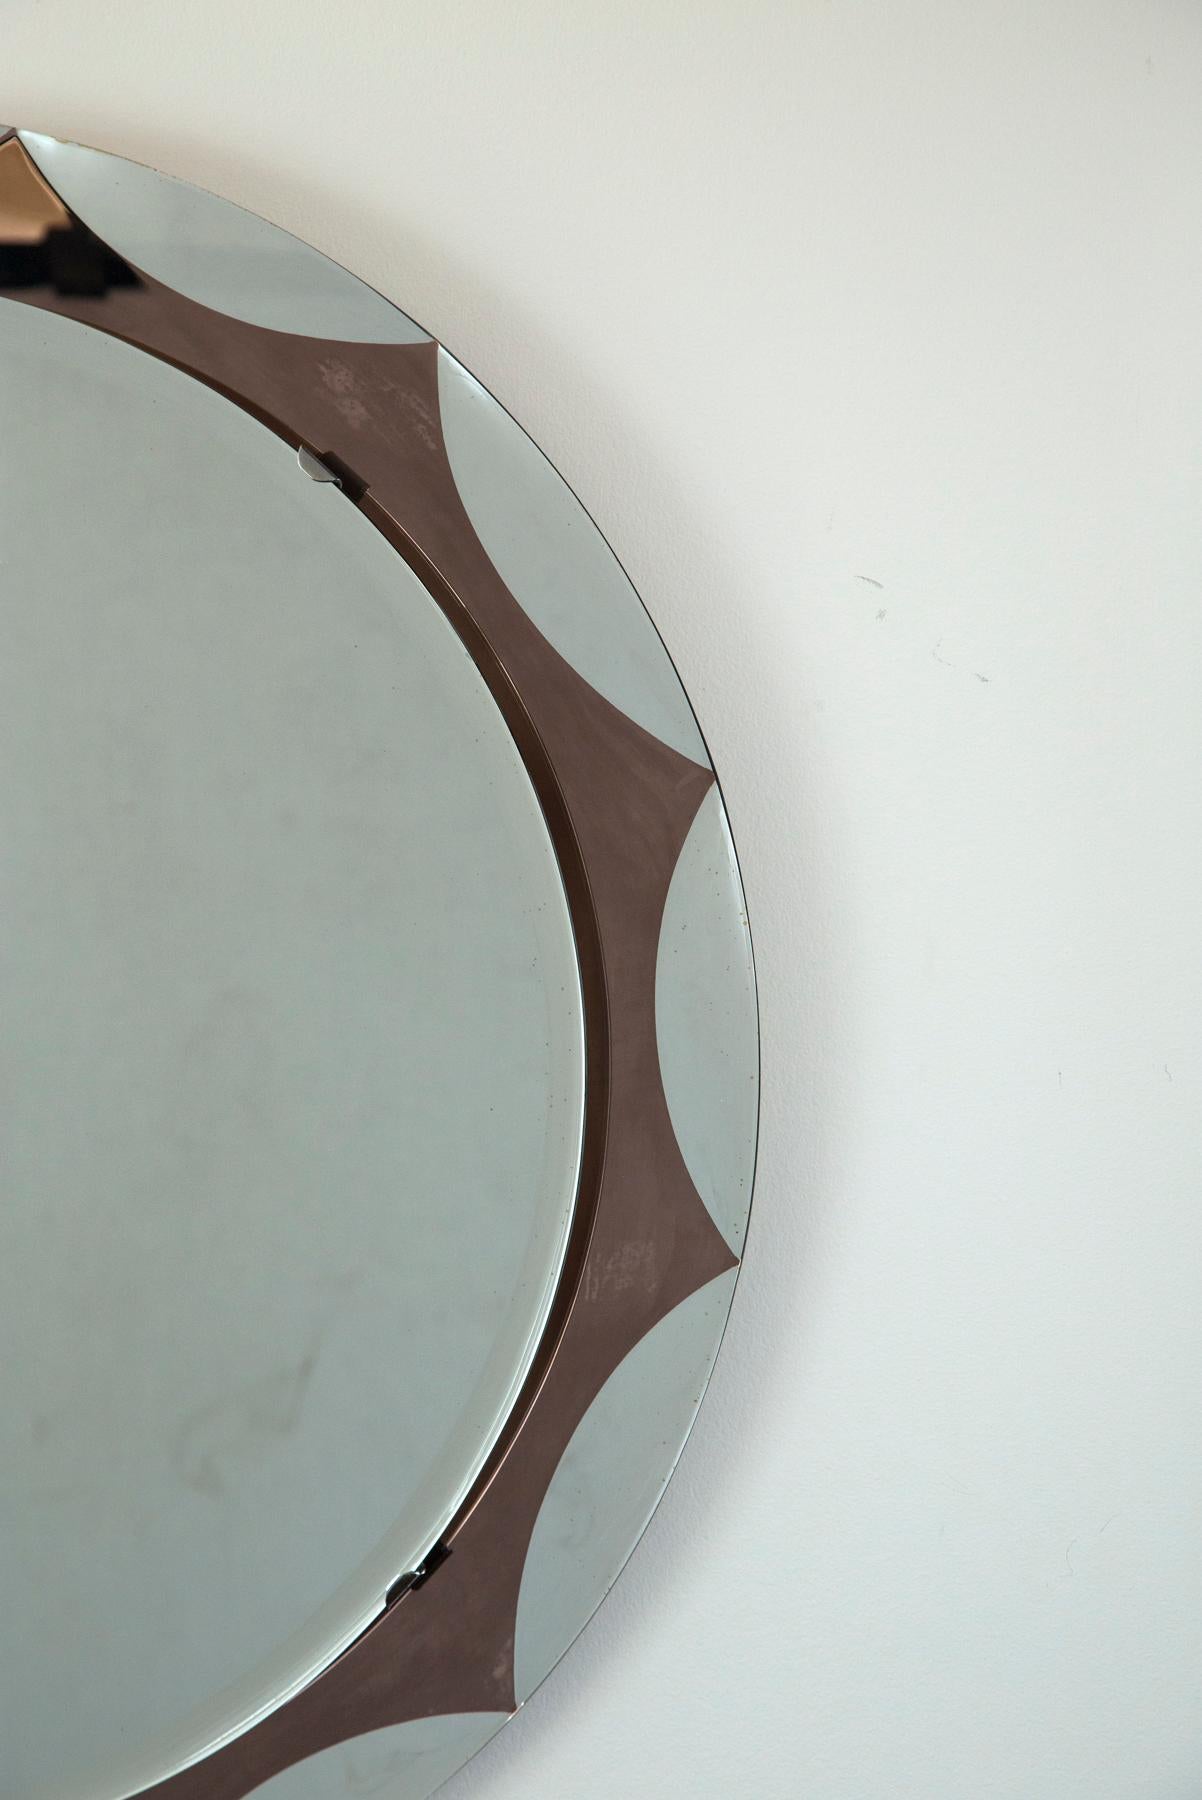 Joli miroir rond flottant avec motif starburst (festonné) de couleur bordeaux, le miroir central flottant est biseauté et attaché avec des clips en nickel, montré avec l'autocollant original du fabricant au dos du miroir
Lieu d'origine
Siena,